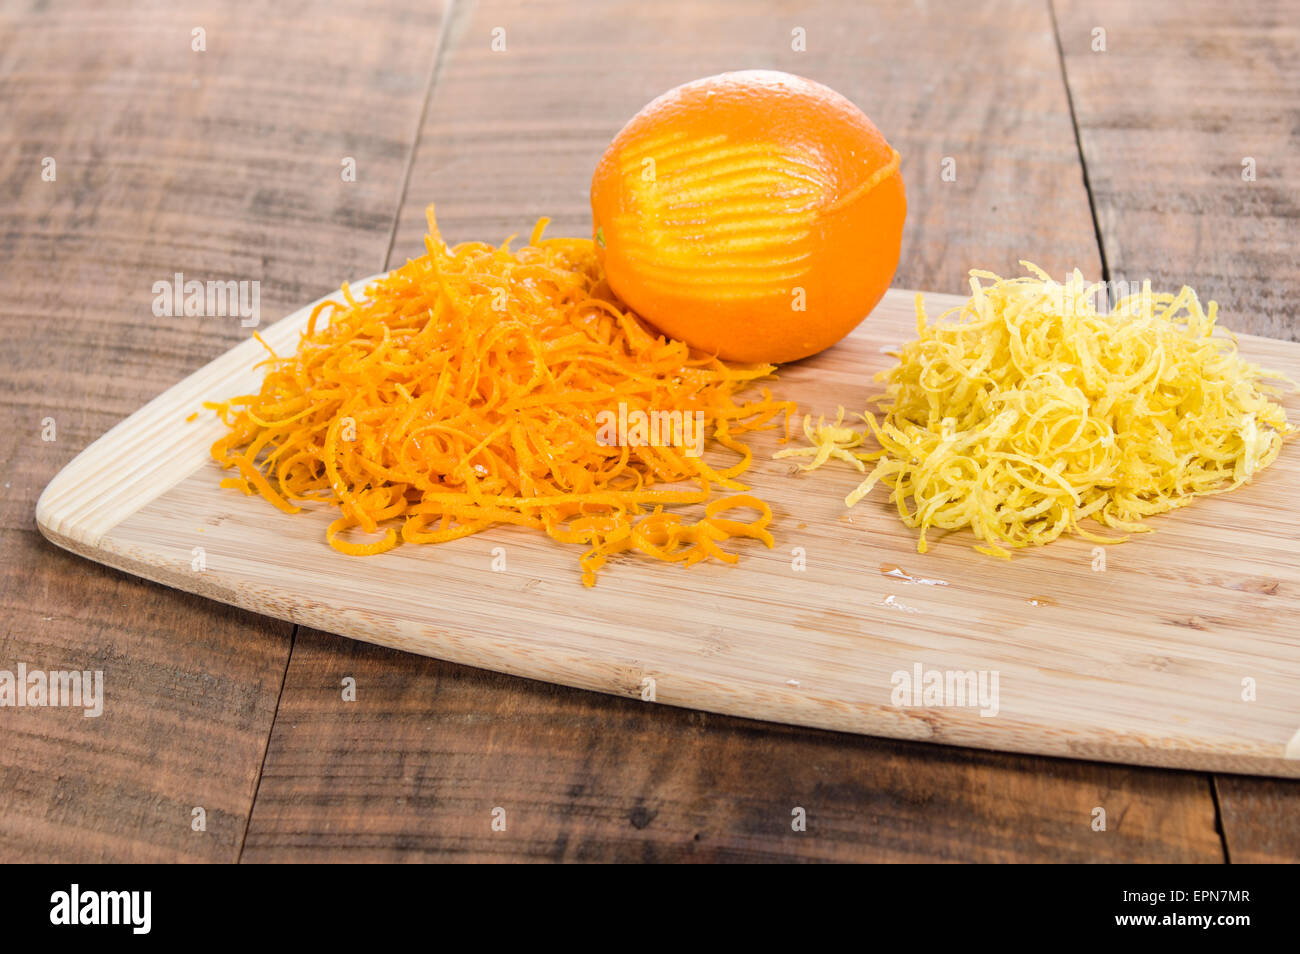 Découper à l'orange et le zeste de citron Banque D'Images